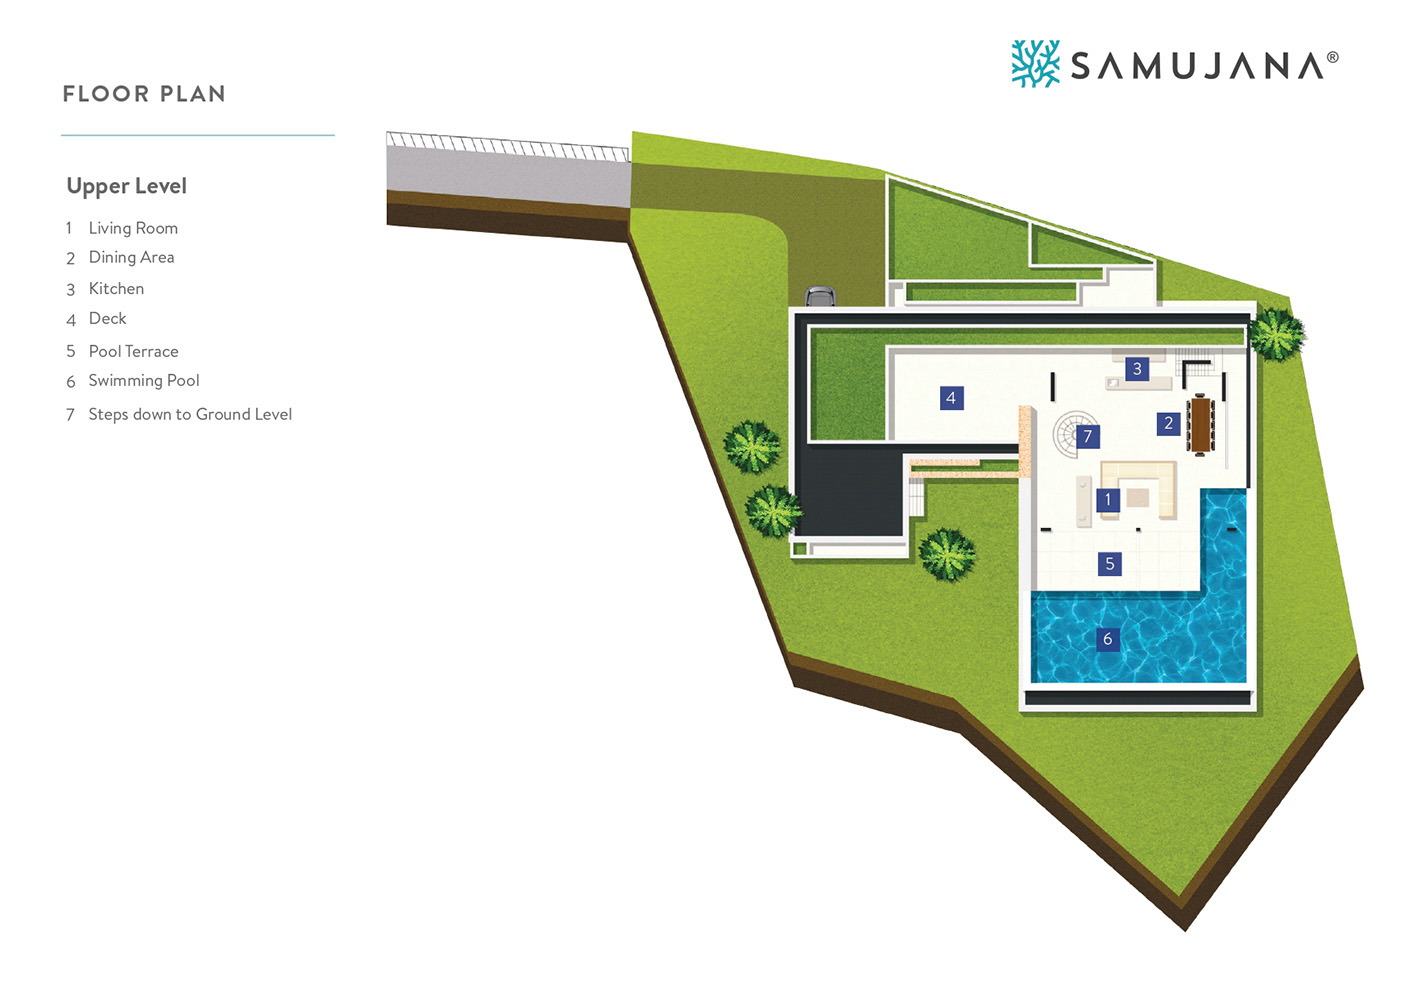 The Finest 5 Bedroom Seaview Pool Villa in Samujana for sale: The Finest 5 Bedroom Seaview Pool Villa in Samujana for sale